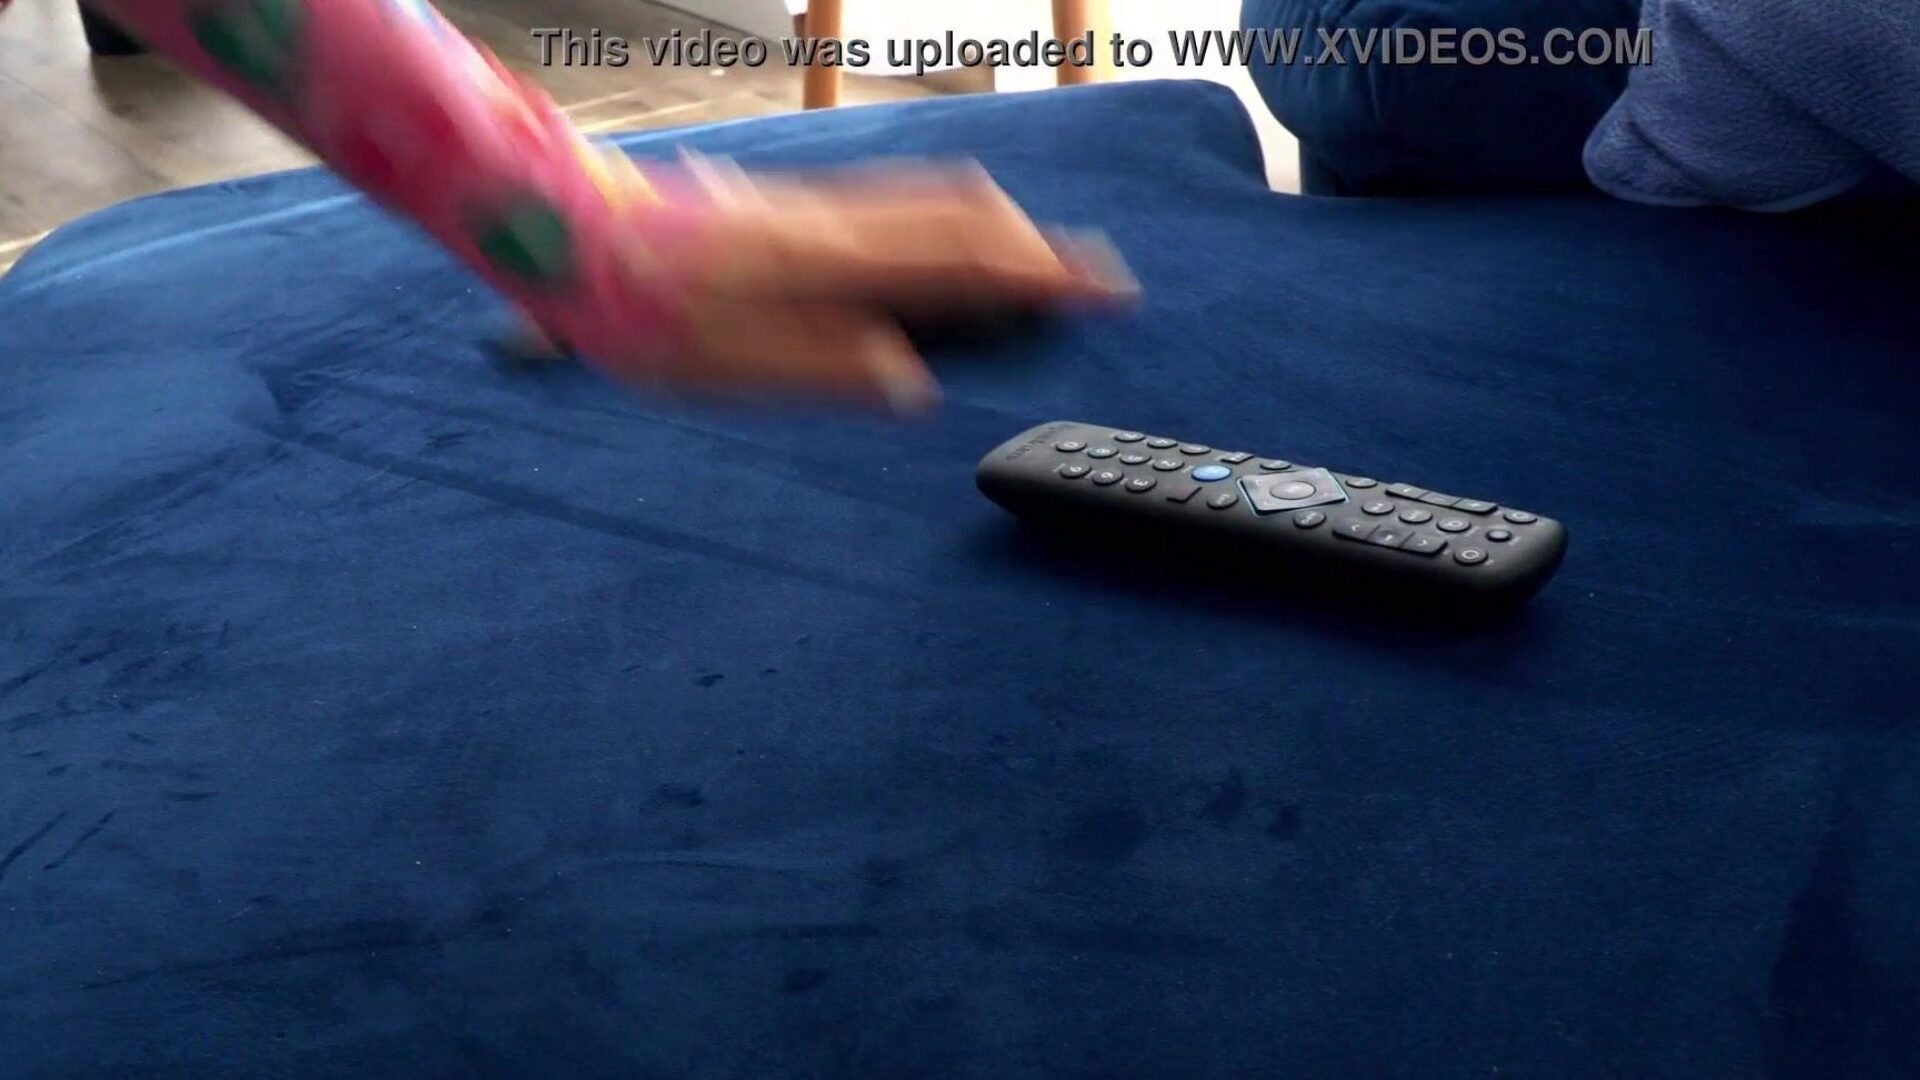 fejlett anális nyújtó jóga a teljes film jelenetét lásd a http://zzfull.com/6 oldalon